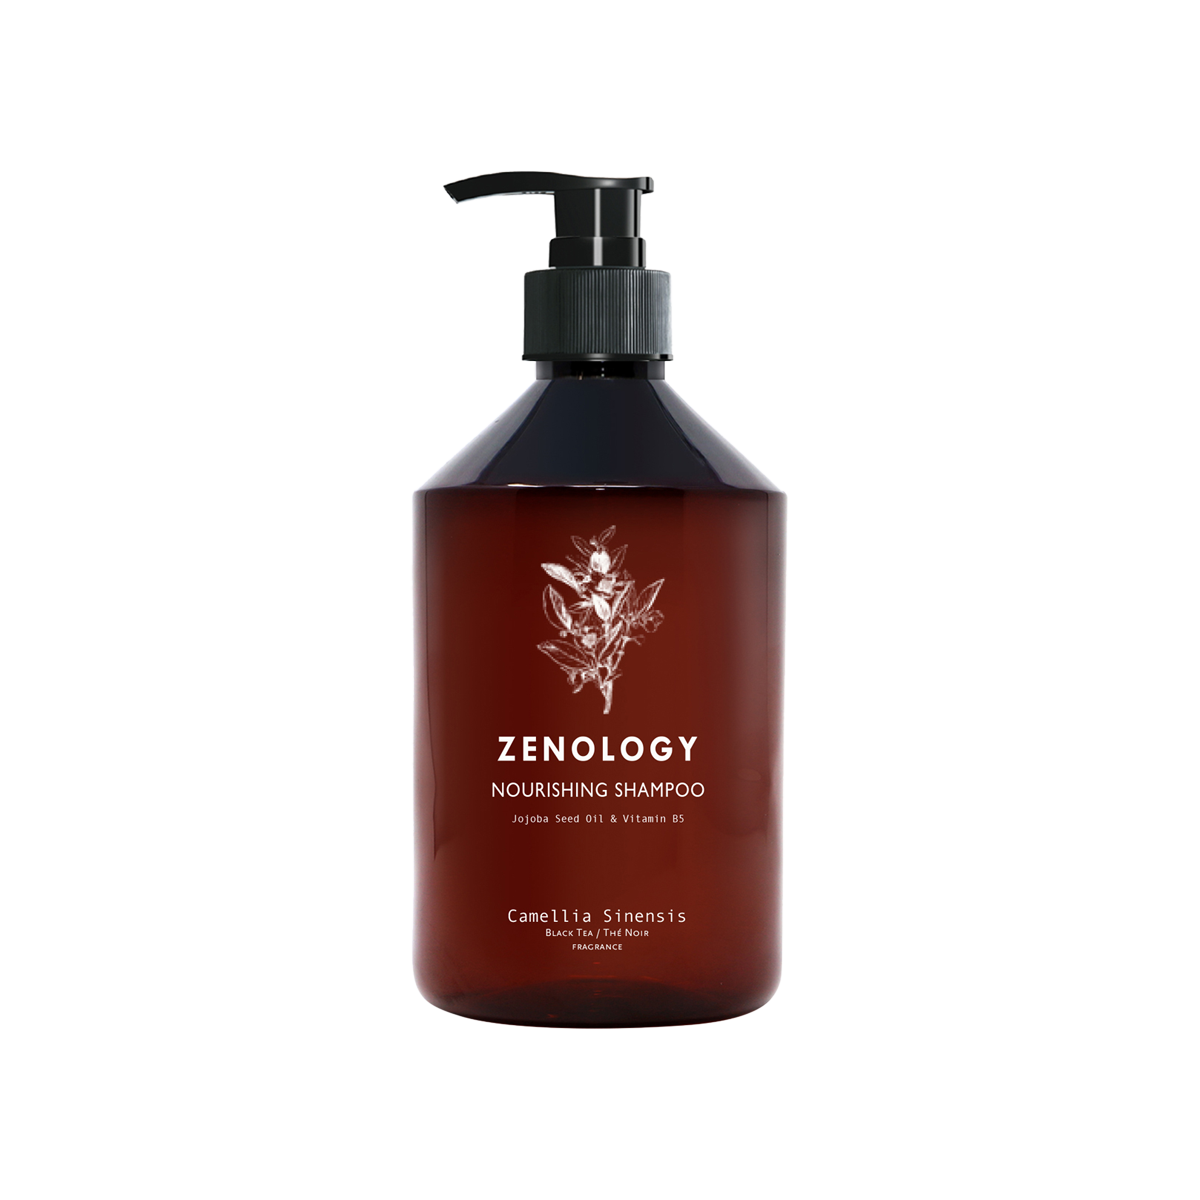 Zenology - Black Tea Nourishing Shampoo